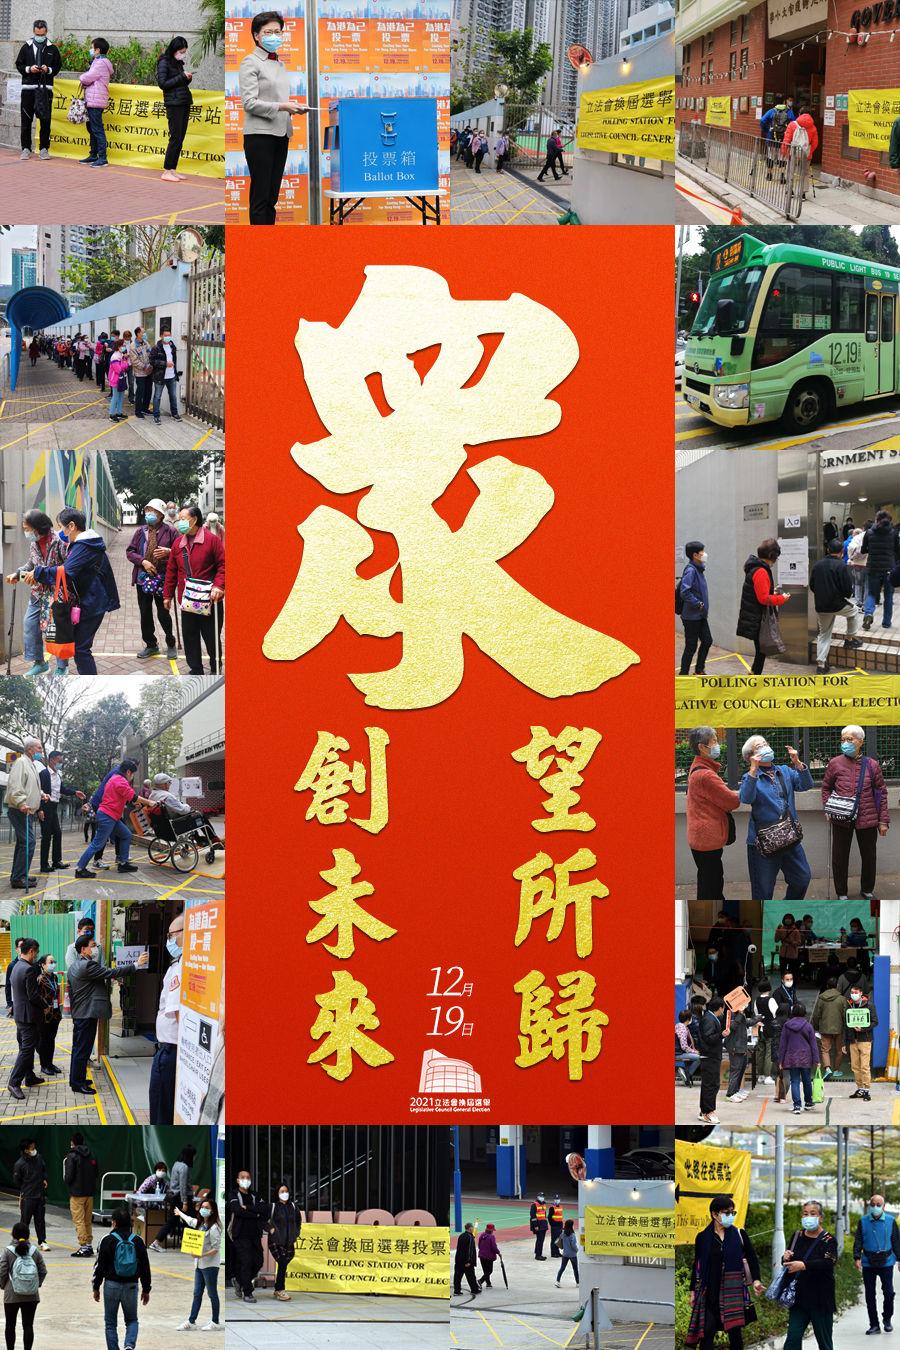 “为港为己投一票”——香港市民热情介入第七届立法会选举